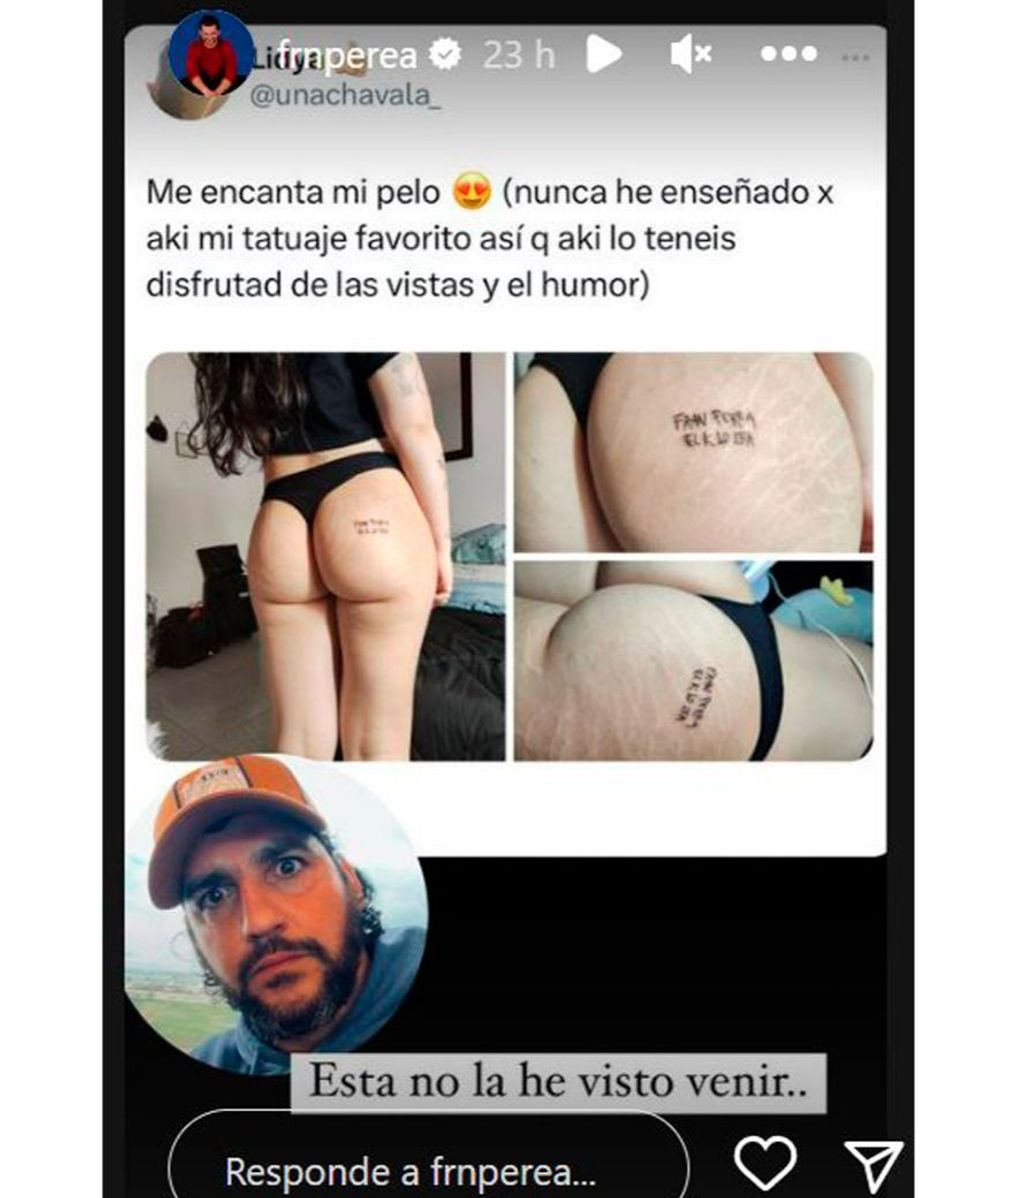 Fran Perea alucina al ver que aparece su nombre en el tatuaje que una chica se ha hecho en el culo